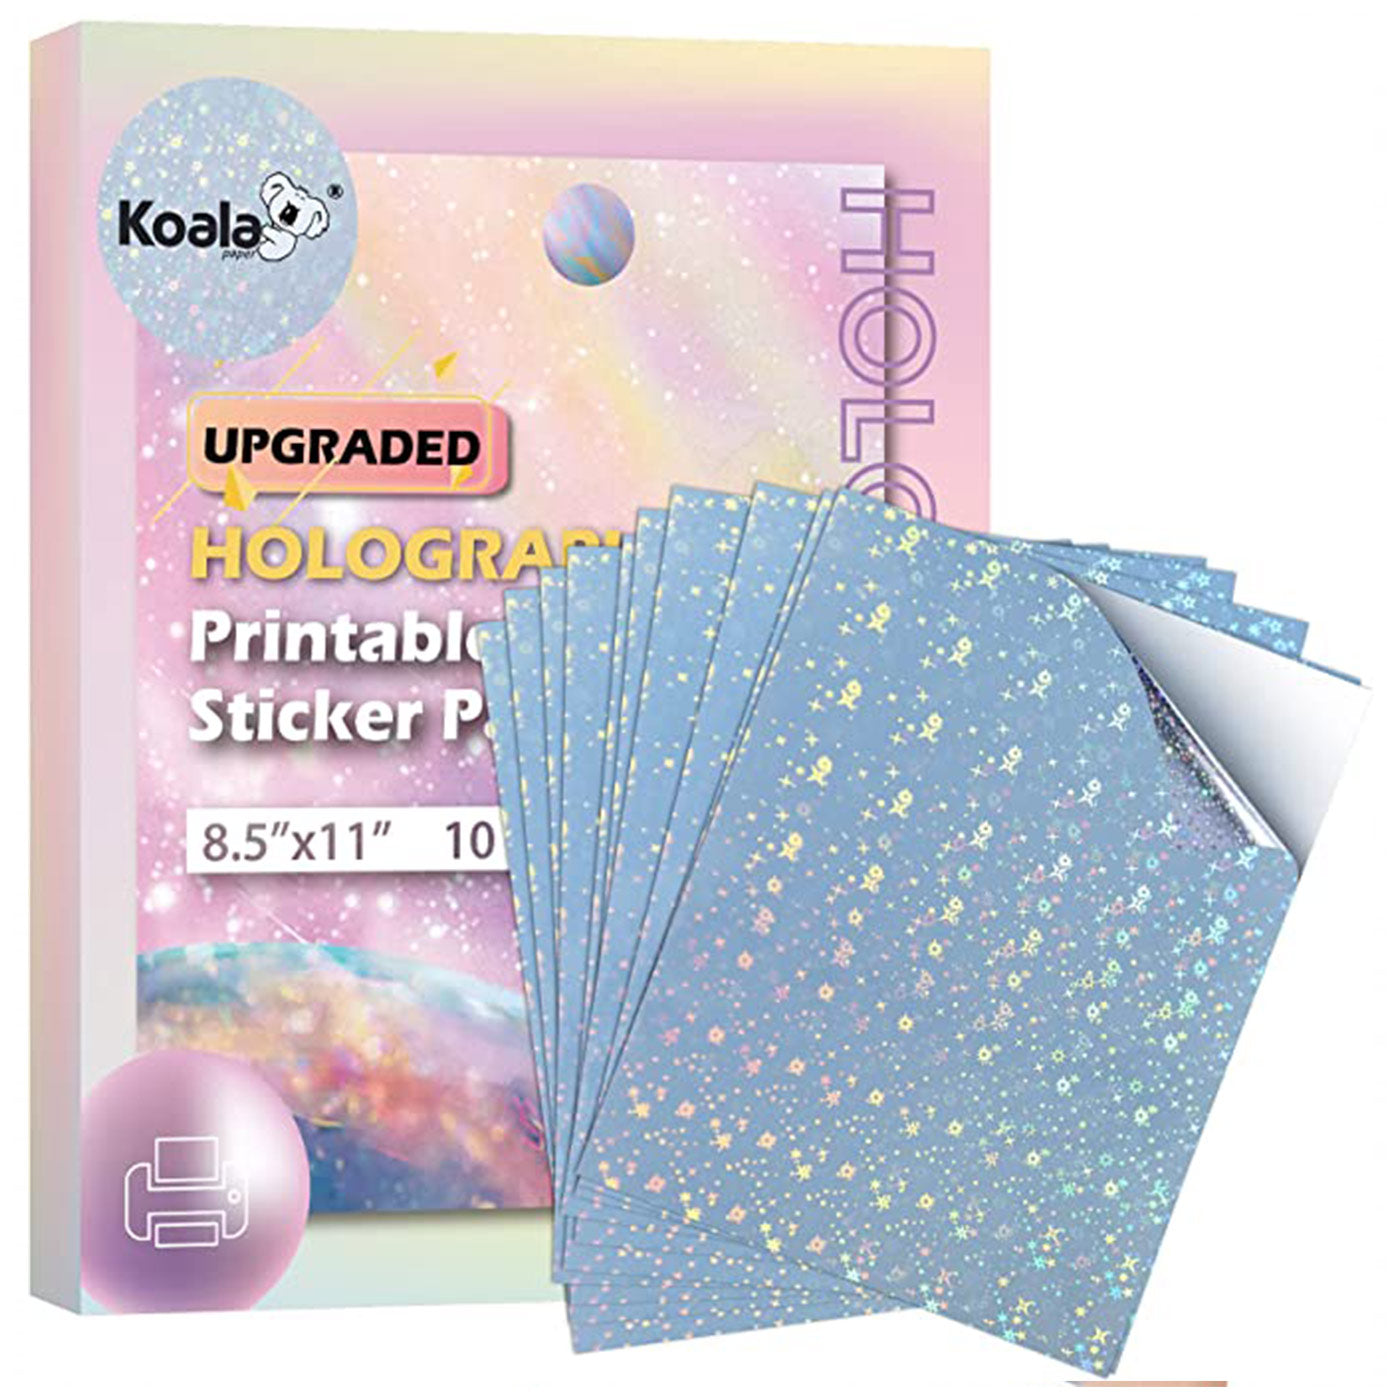 120 Sheets Koala Glossy Sticker Paper for Inkjet Printer